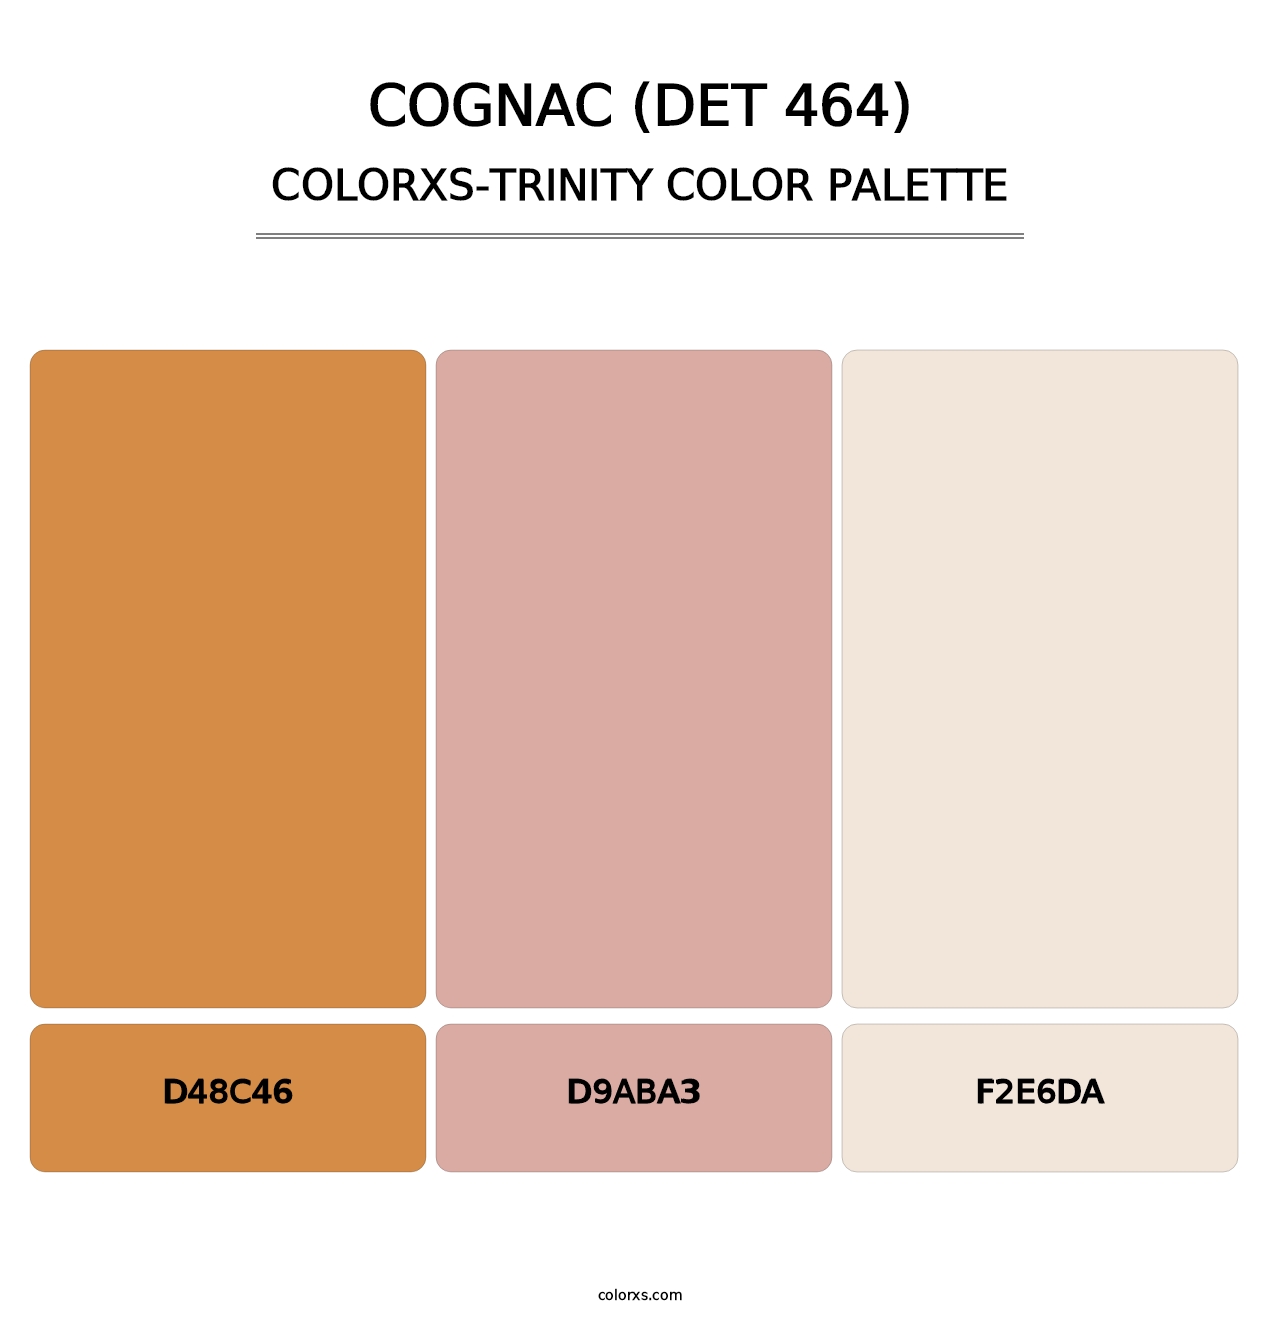 Cognac (DET 464) - Colorxs Trinity Palette